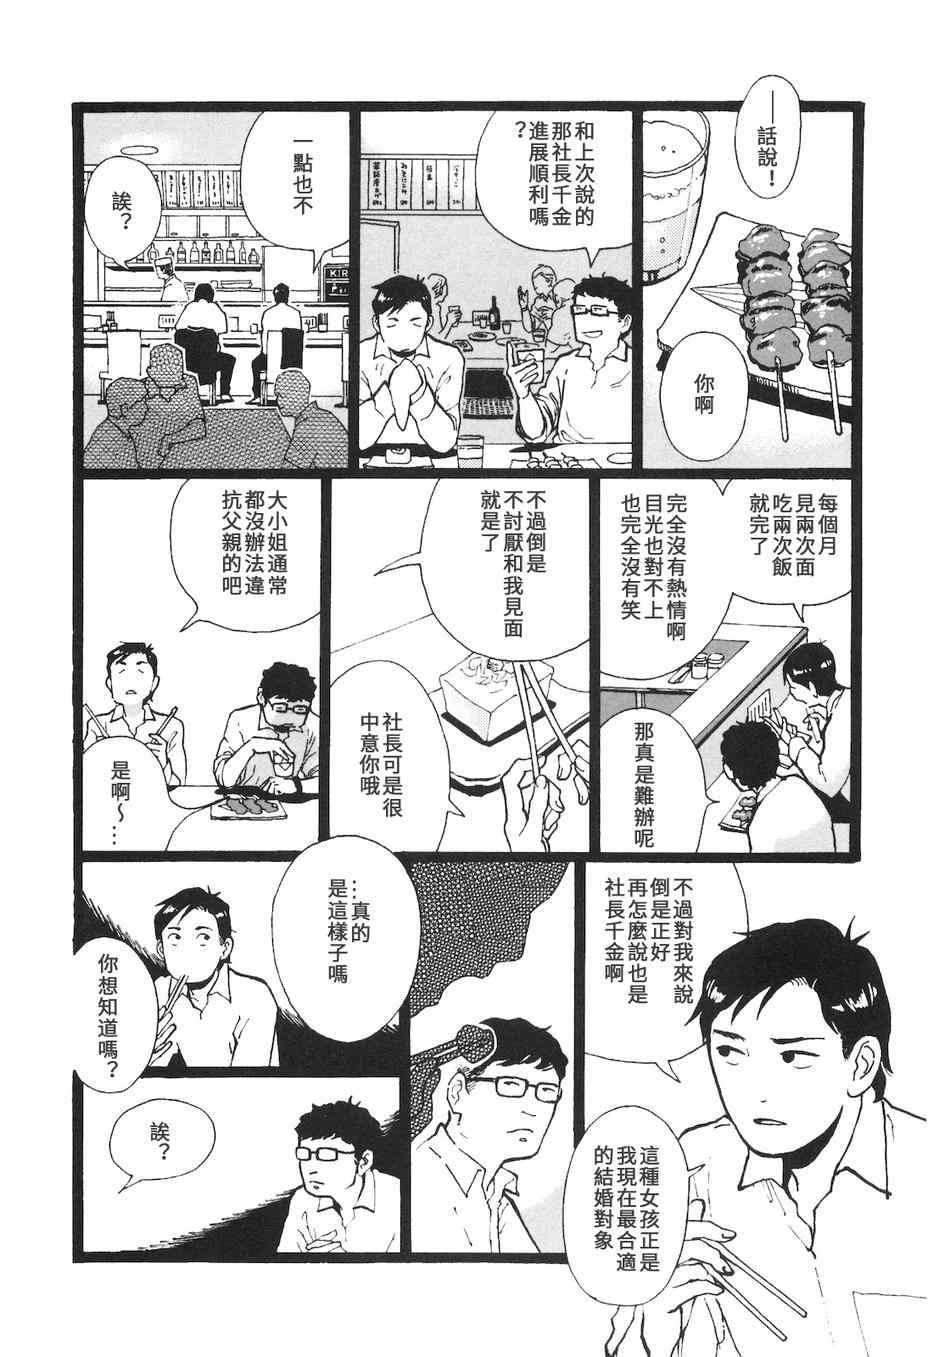 《抽屉里的温室箱》漫画 07恋人清单